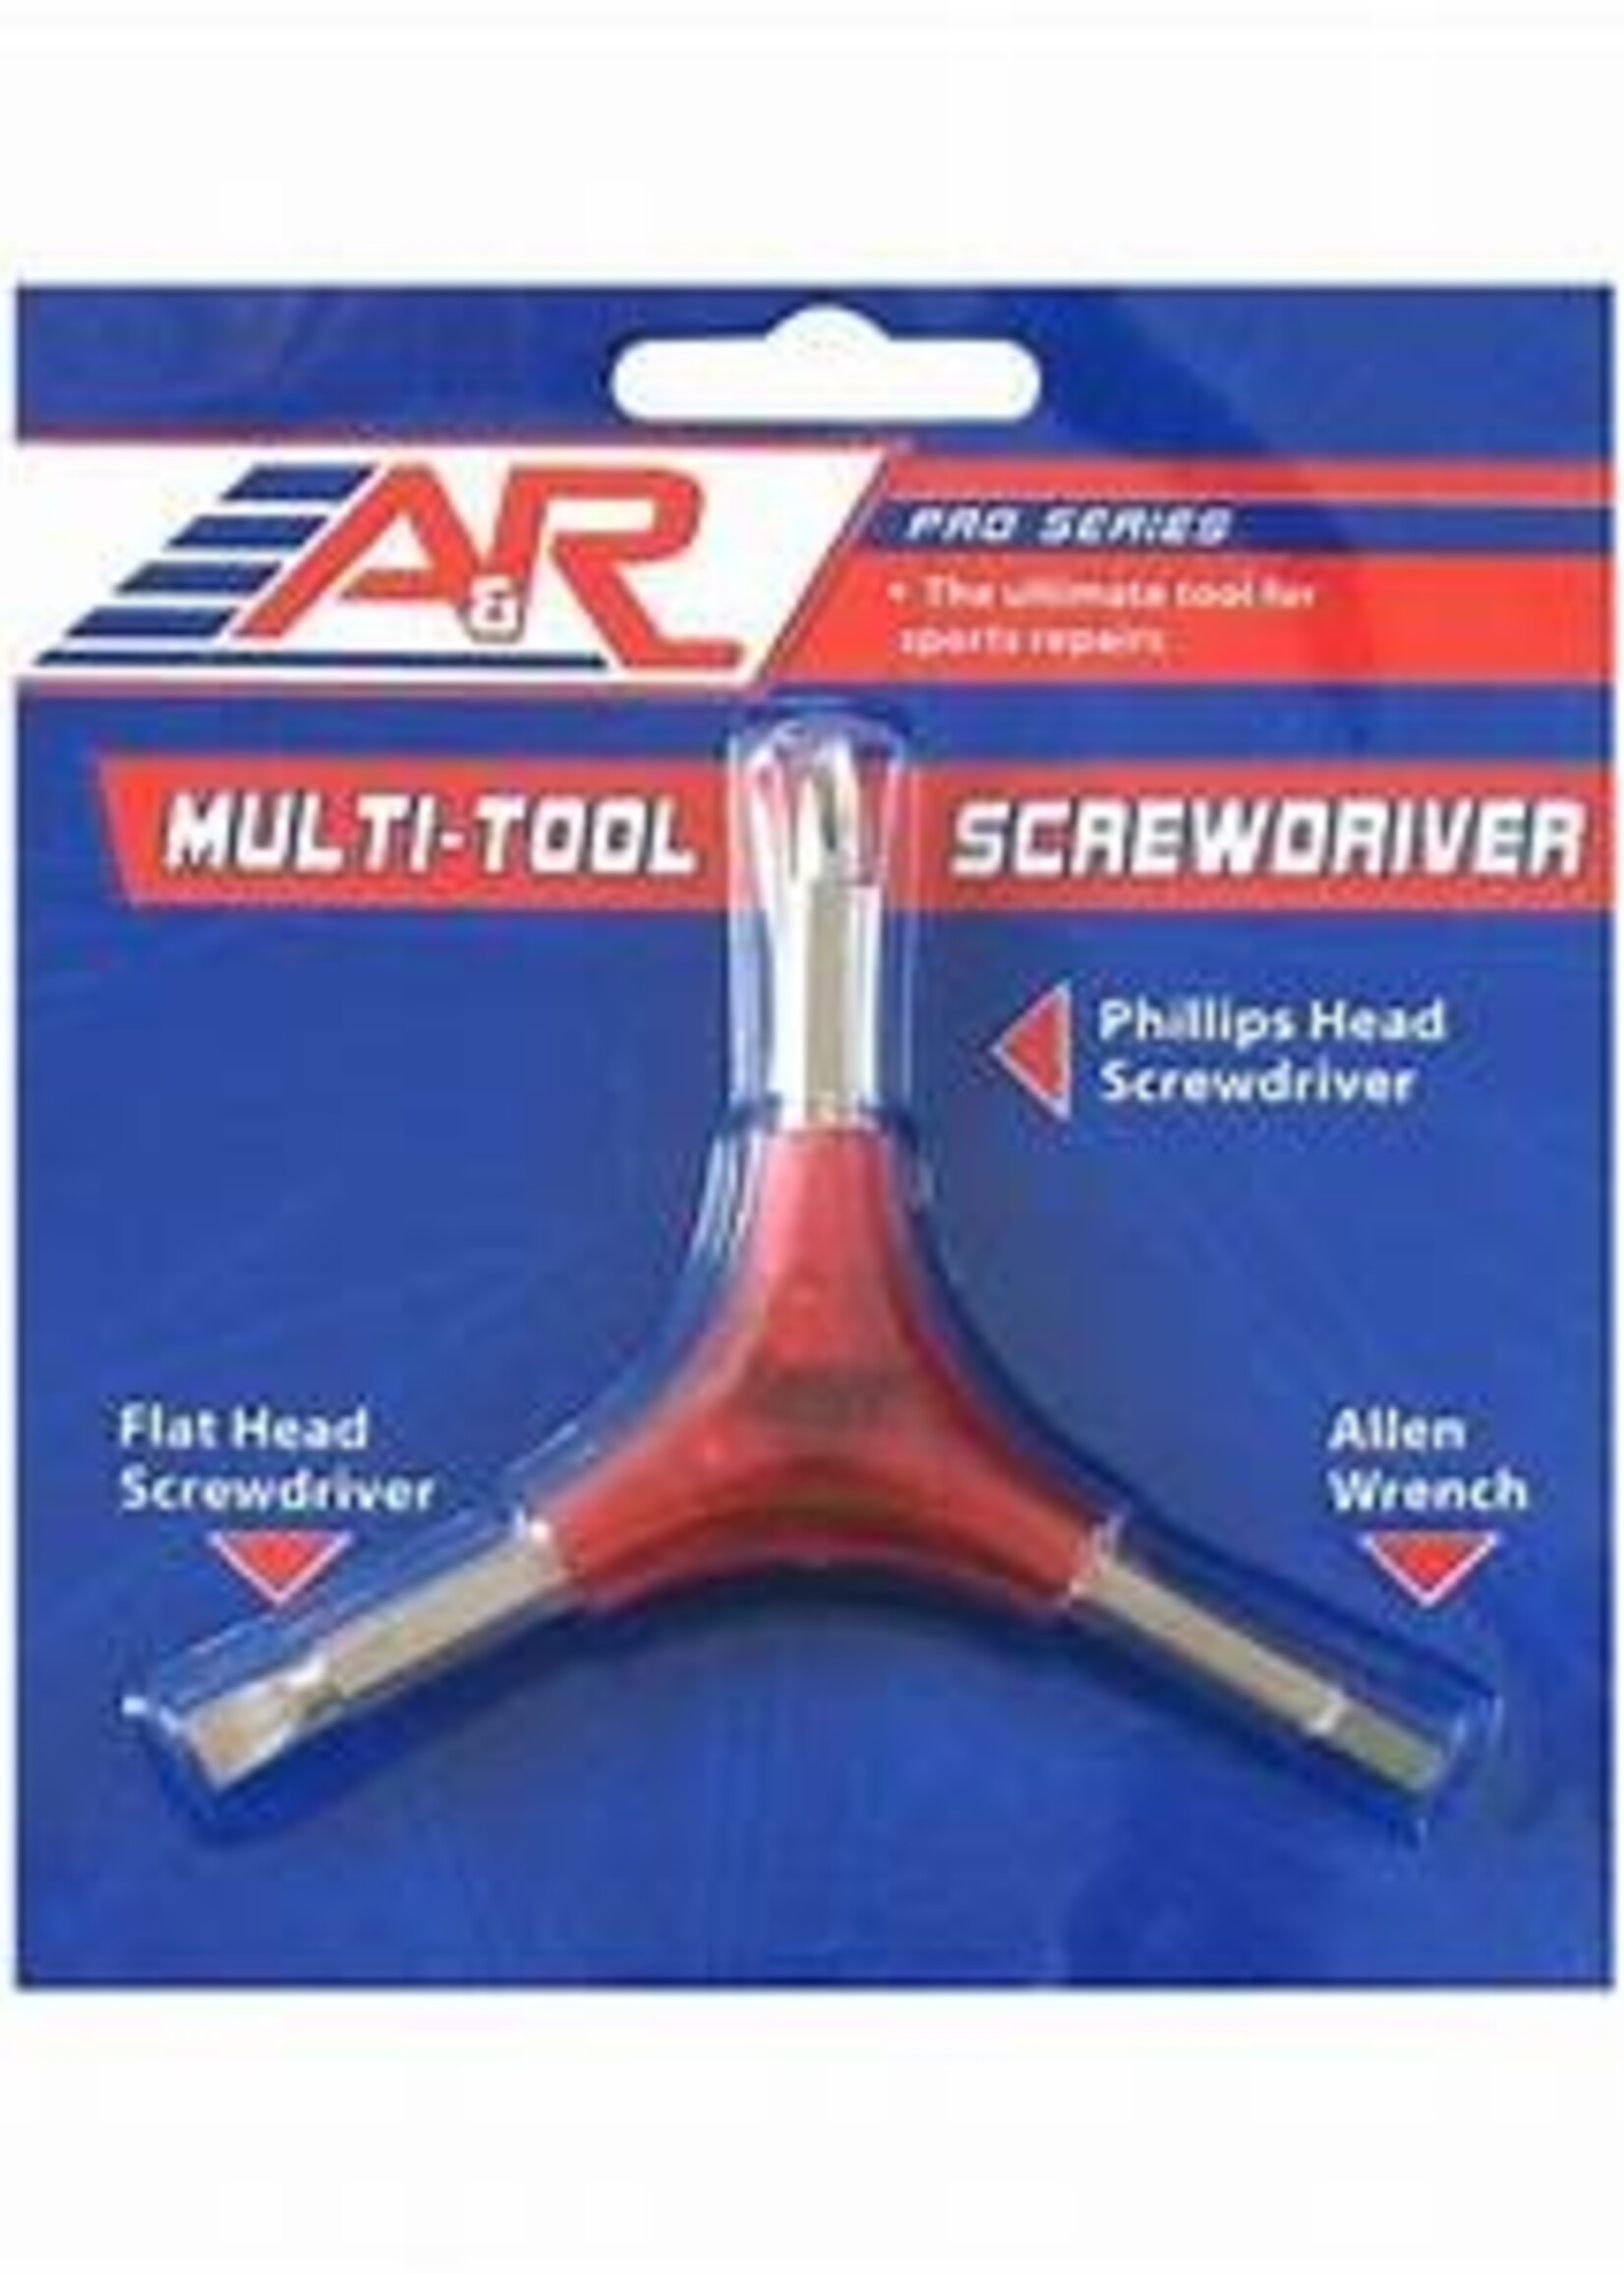 A&R Multi Tool Screwdriver